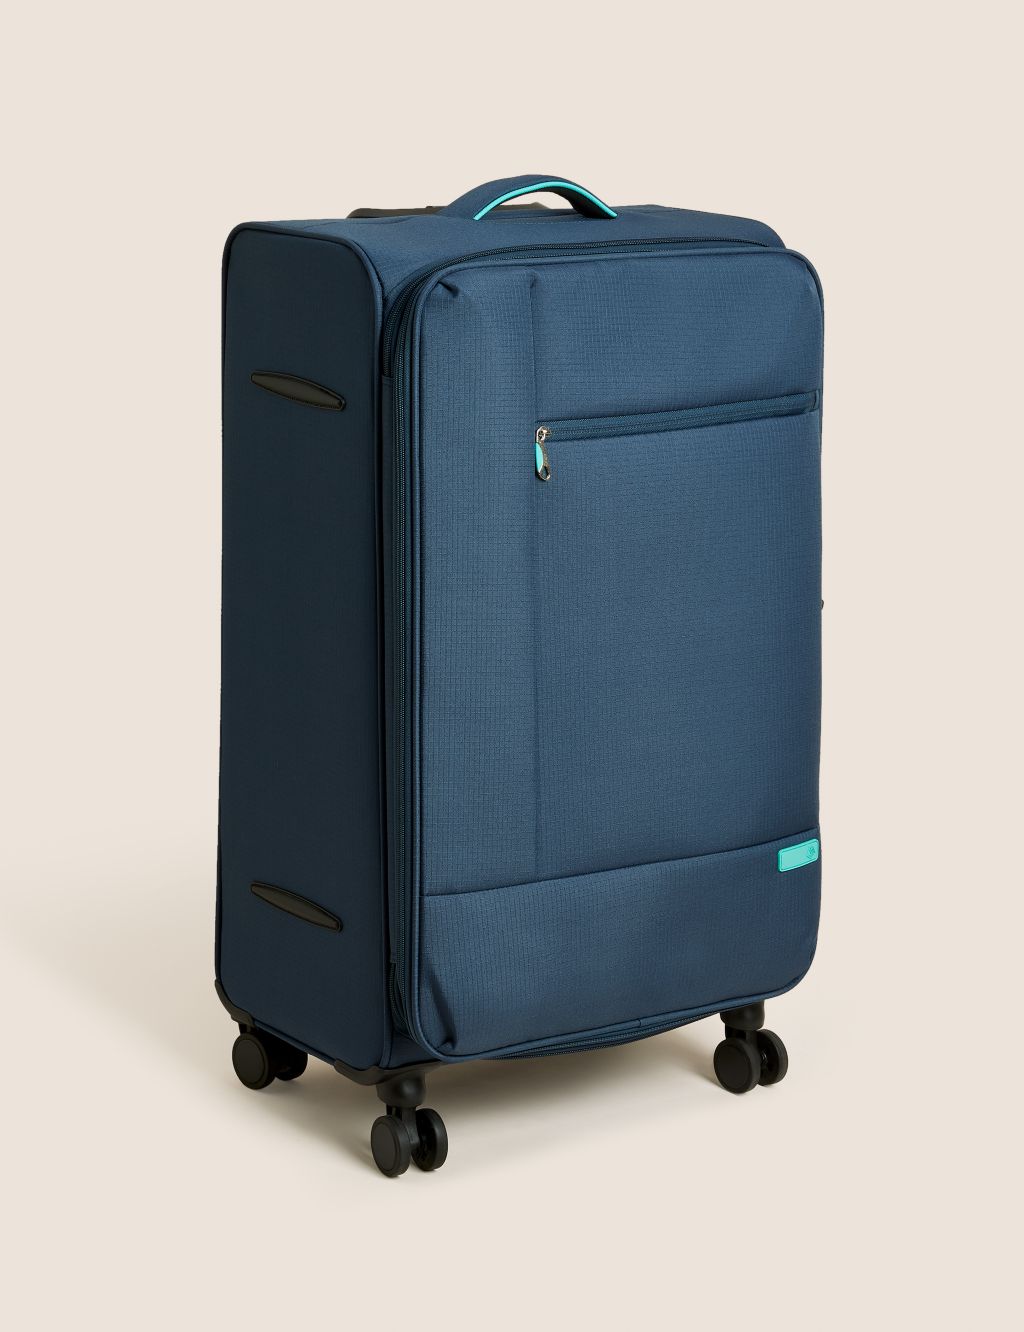 Seville 4 Wheel Soft Large Suitcase